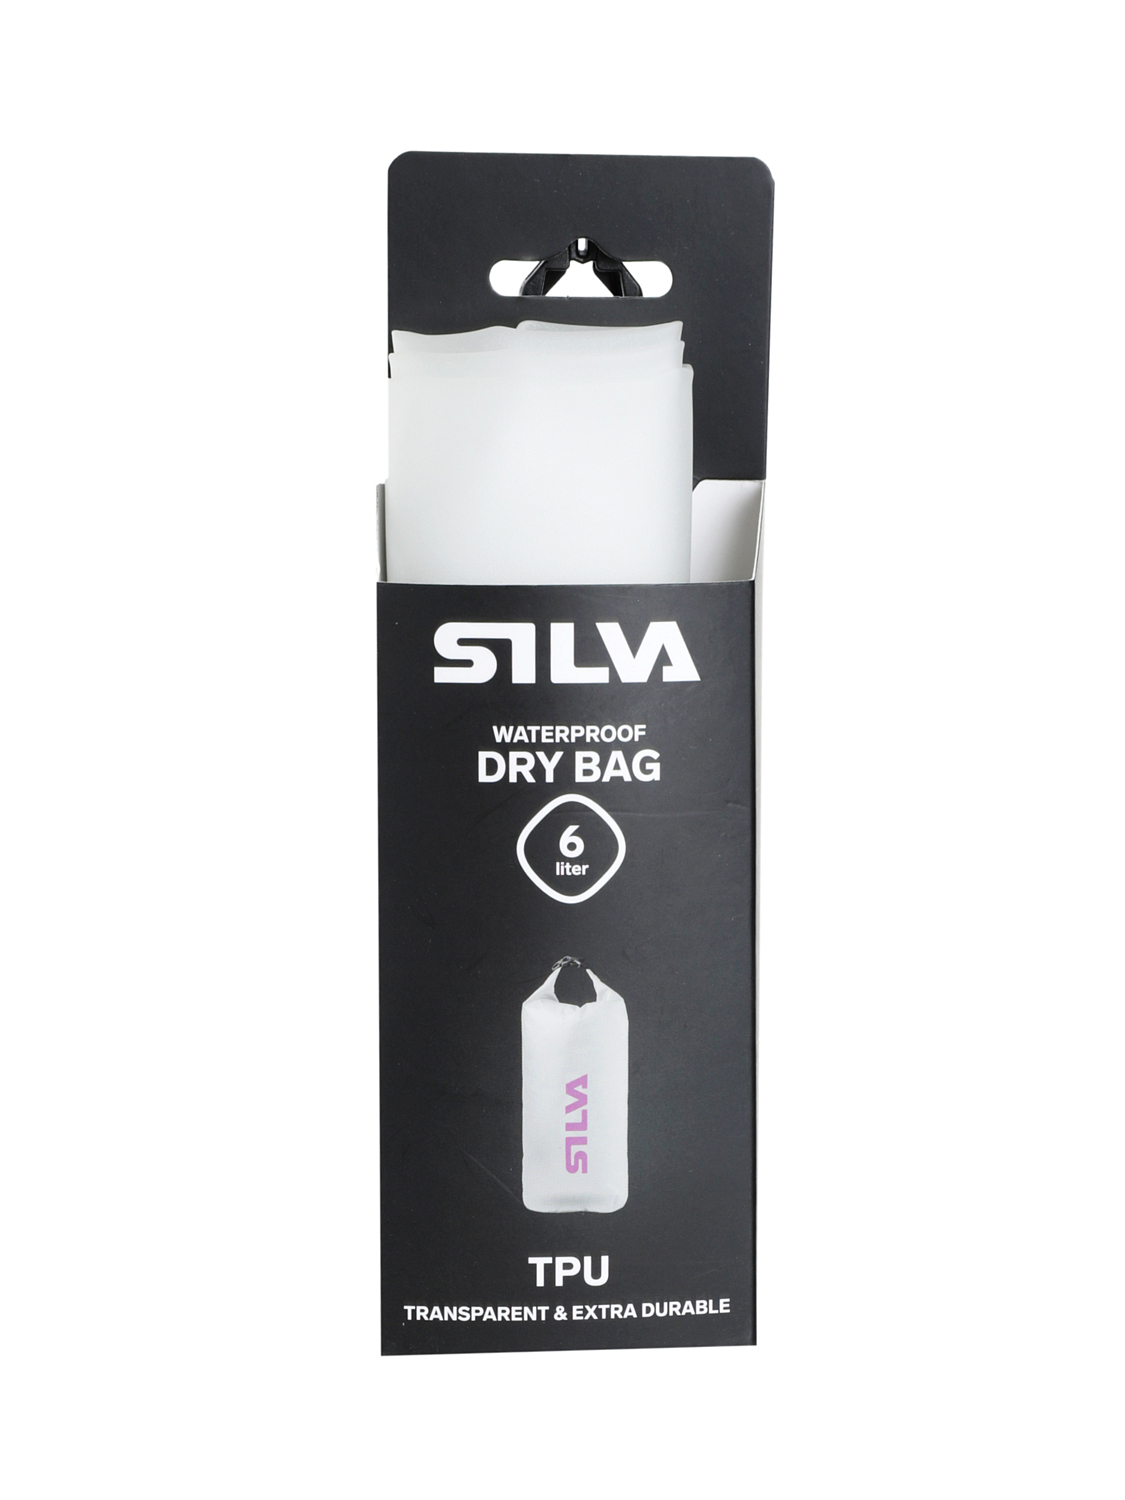 Гермомешок Silva Dry Bag TPU 6L